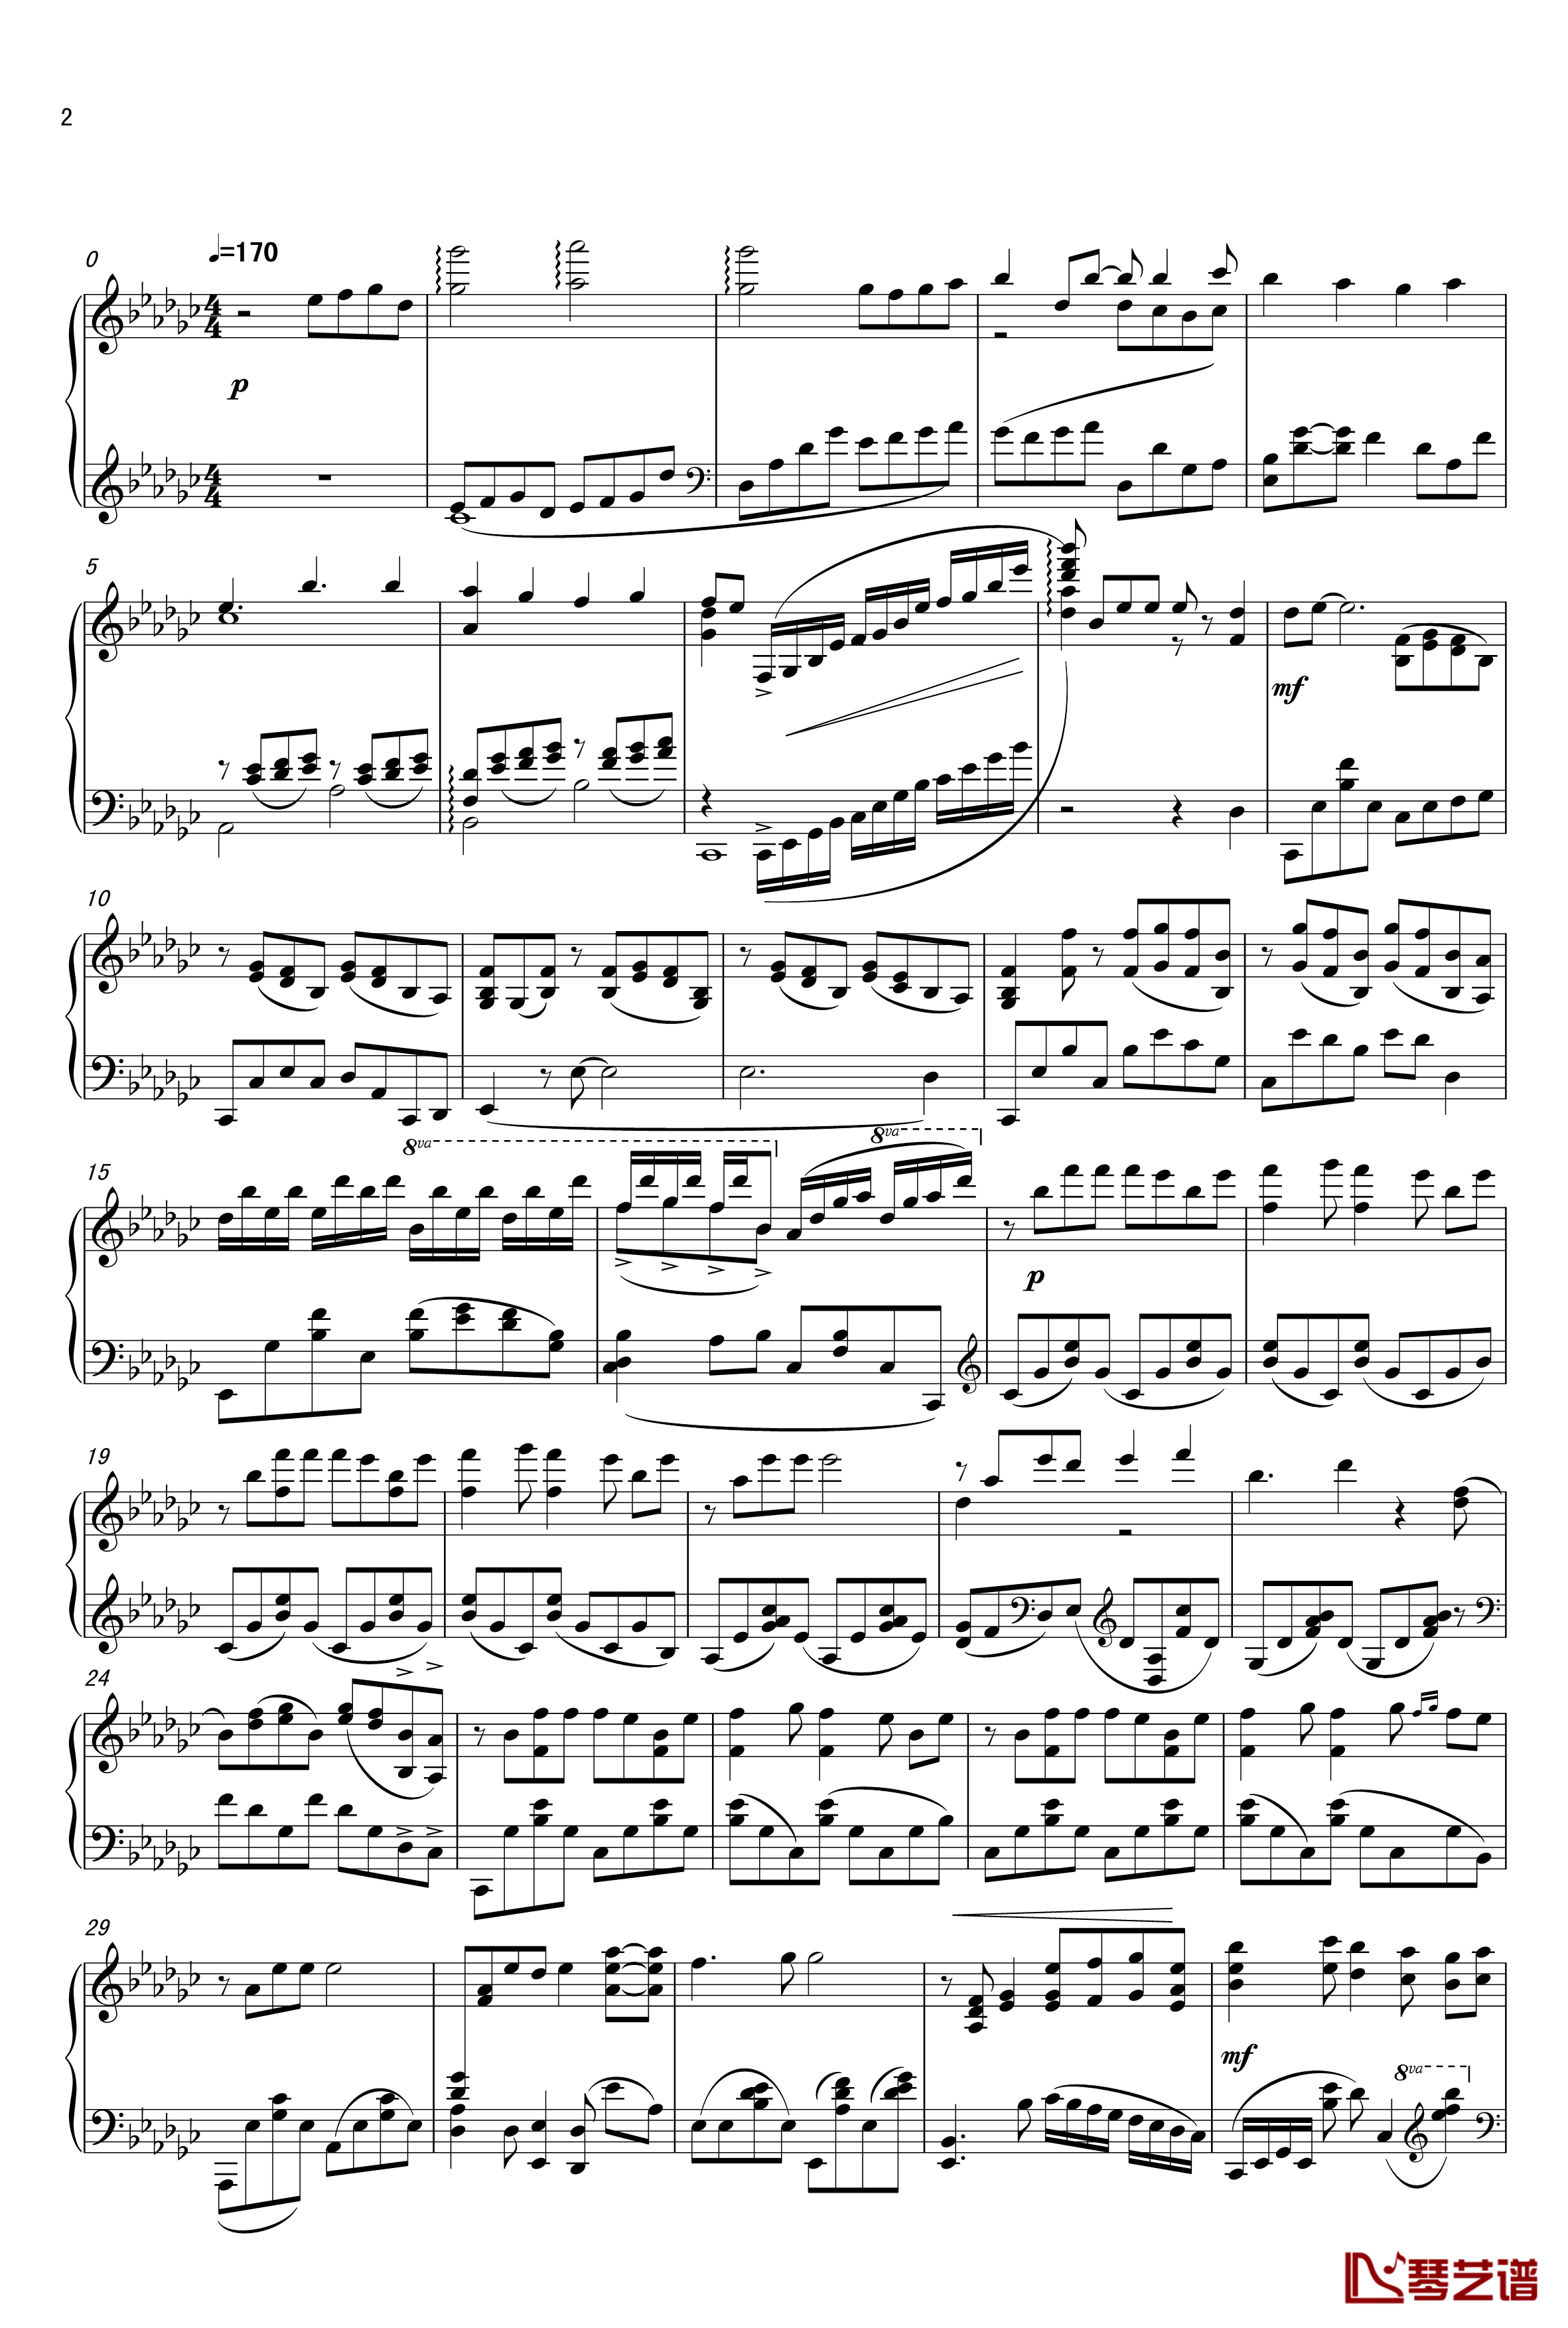 ロミオとシンデレラ钢琴谱-初音未来2